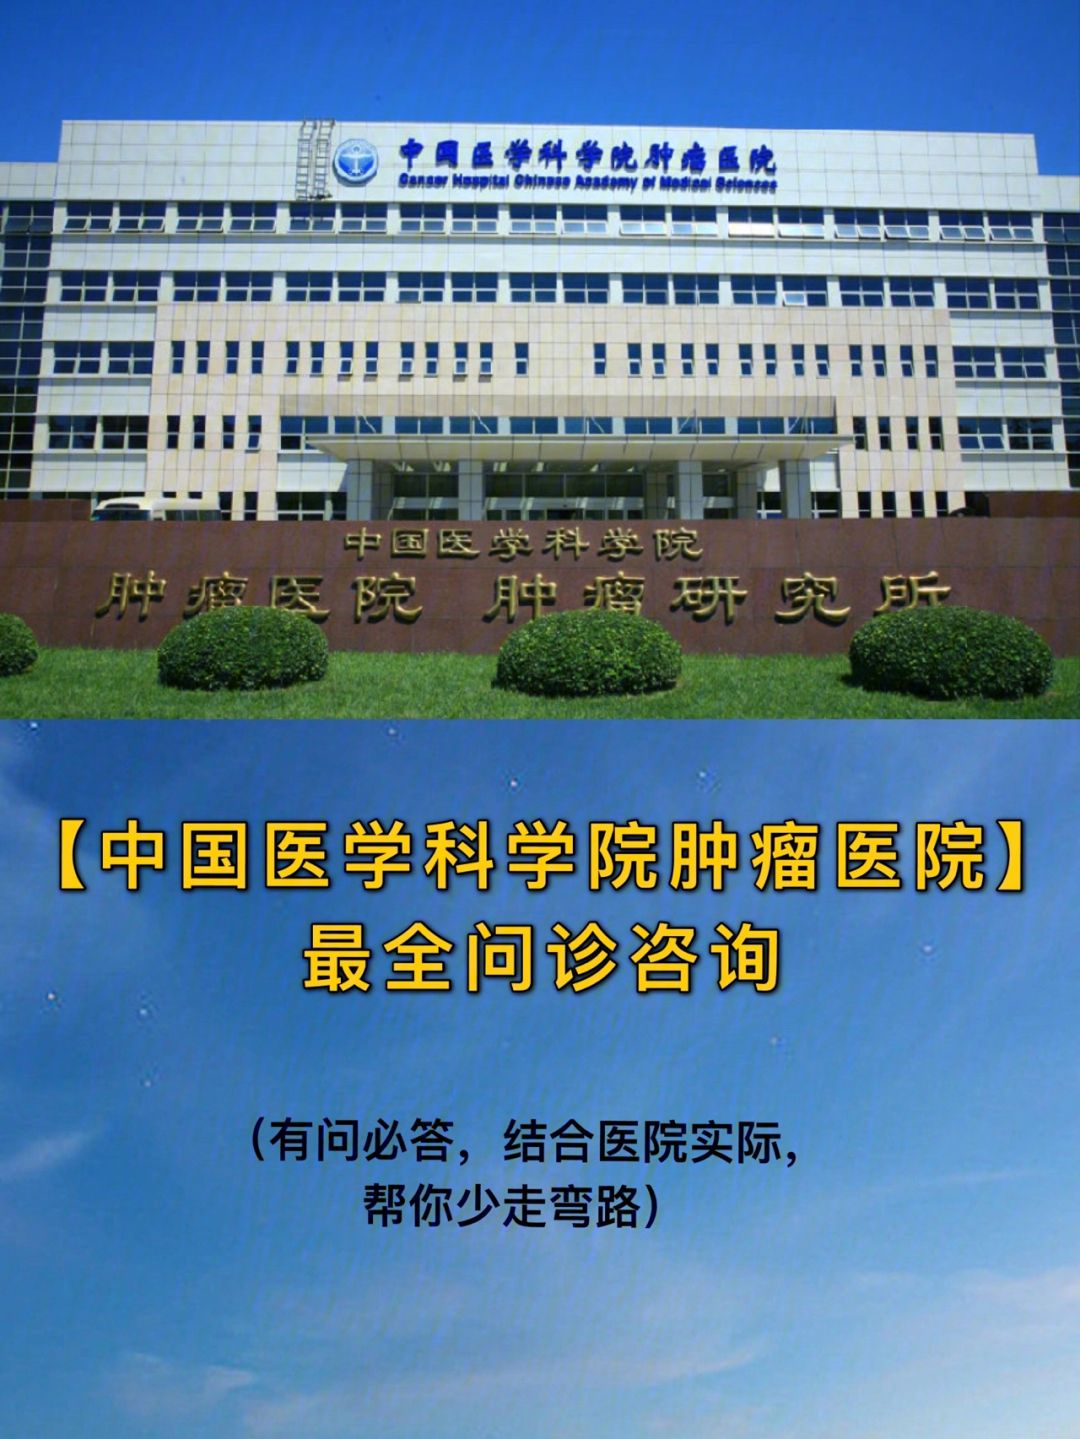 包含中国中医科学院广安门医院一直在用的黄牛挂号，推荐大家收藏备用